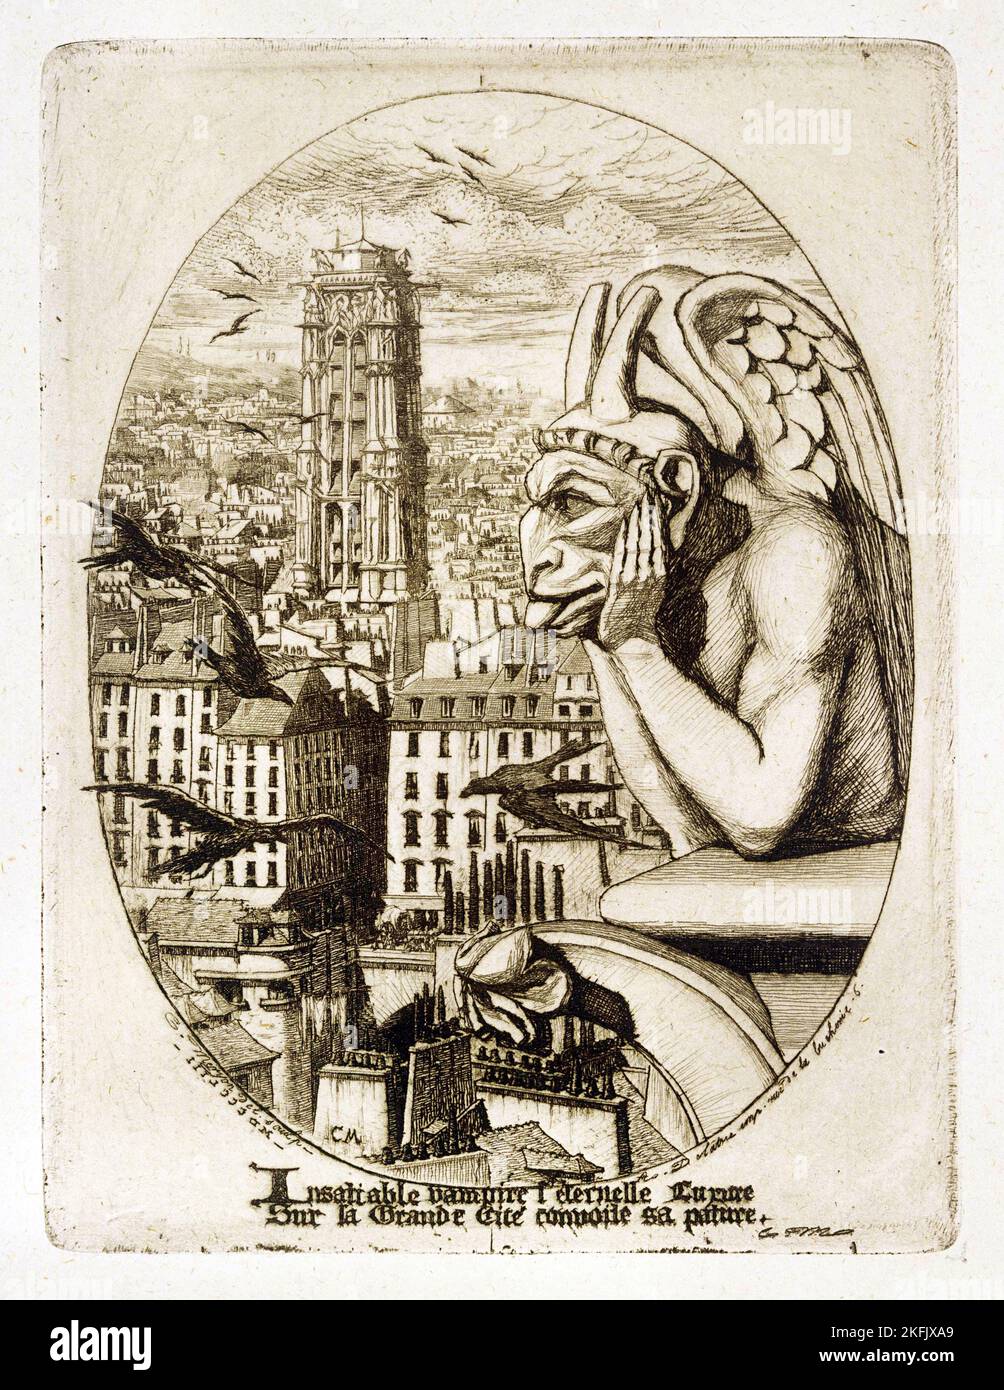 Charles Meryon ; le Stryge ; 1853 ; gravure sur papier ; The Phillips Collection, Washington, D.C., États-Unis. Banque D'Images